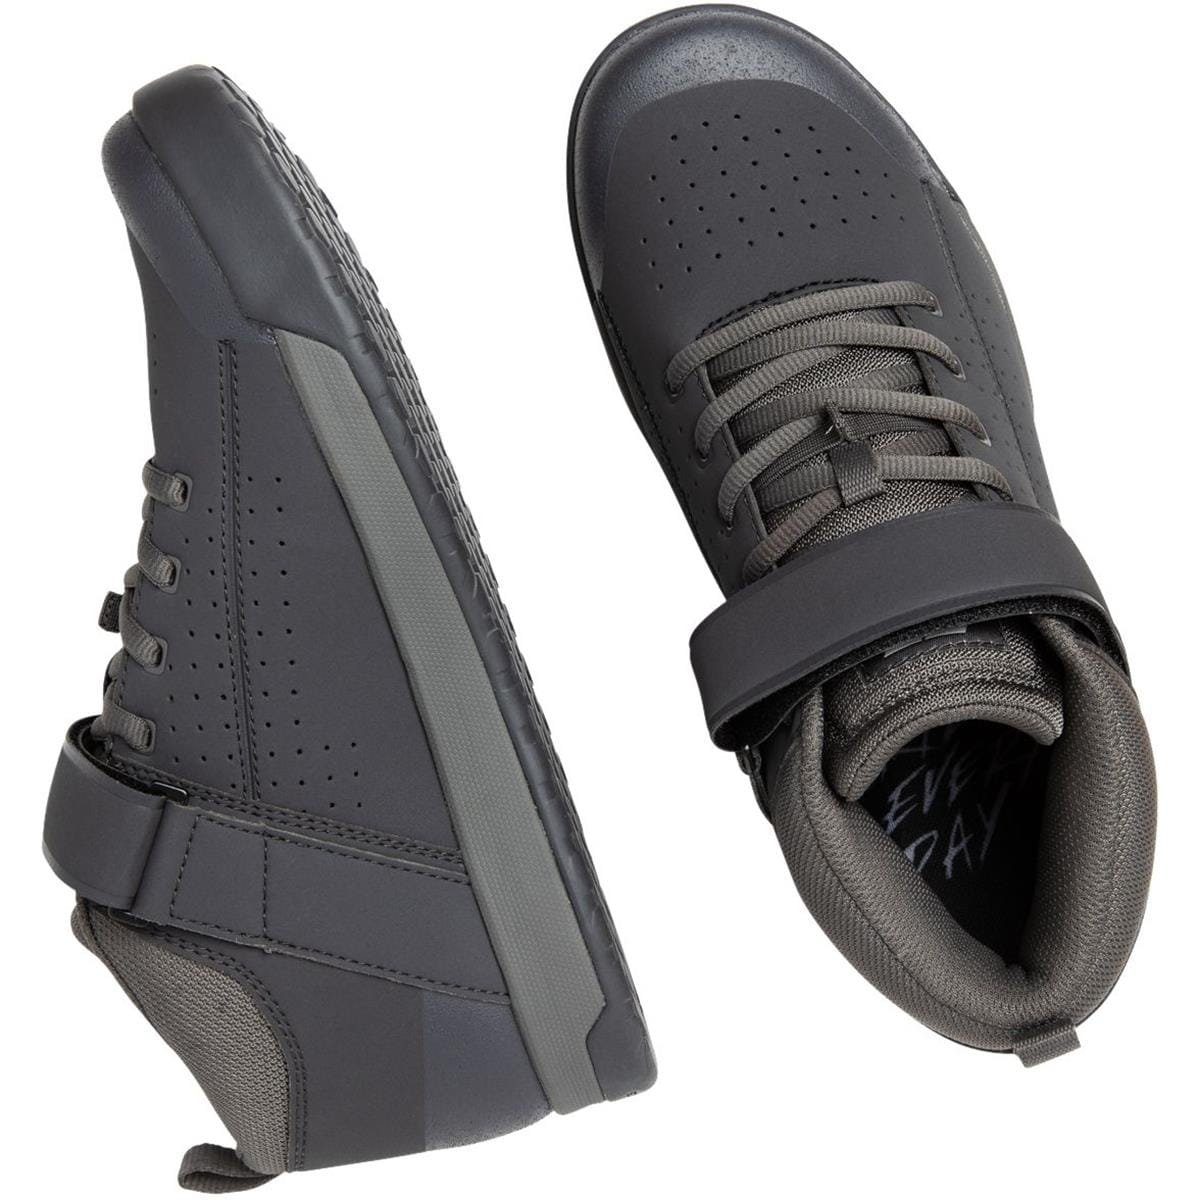 Flat-Pedal-Schuhe Concepts Black/Charcoal 45 Wildcat Shoe Ride Ride - Concepts Men's Fahrradschuh